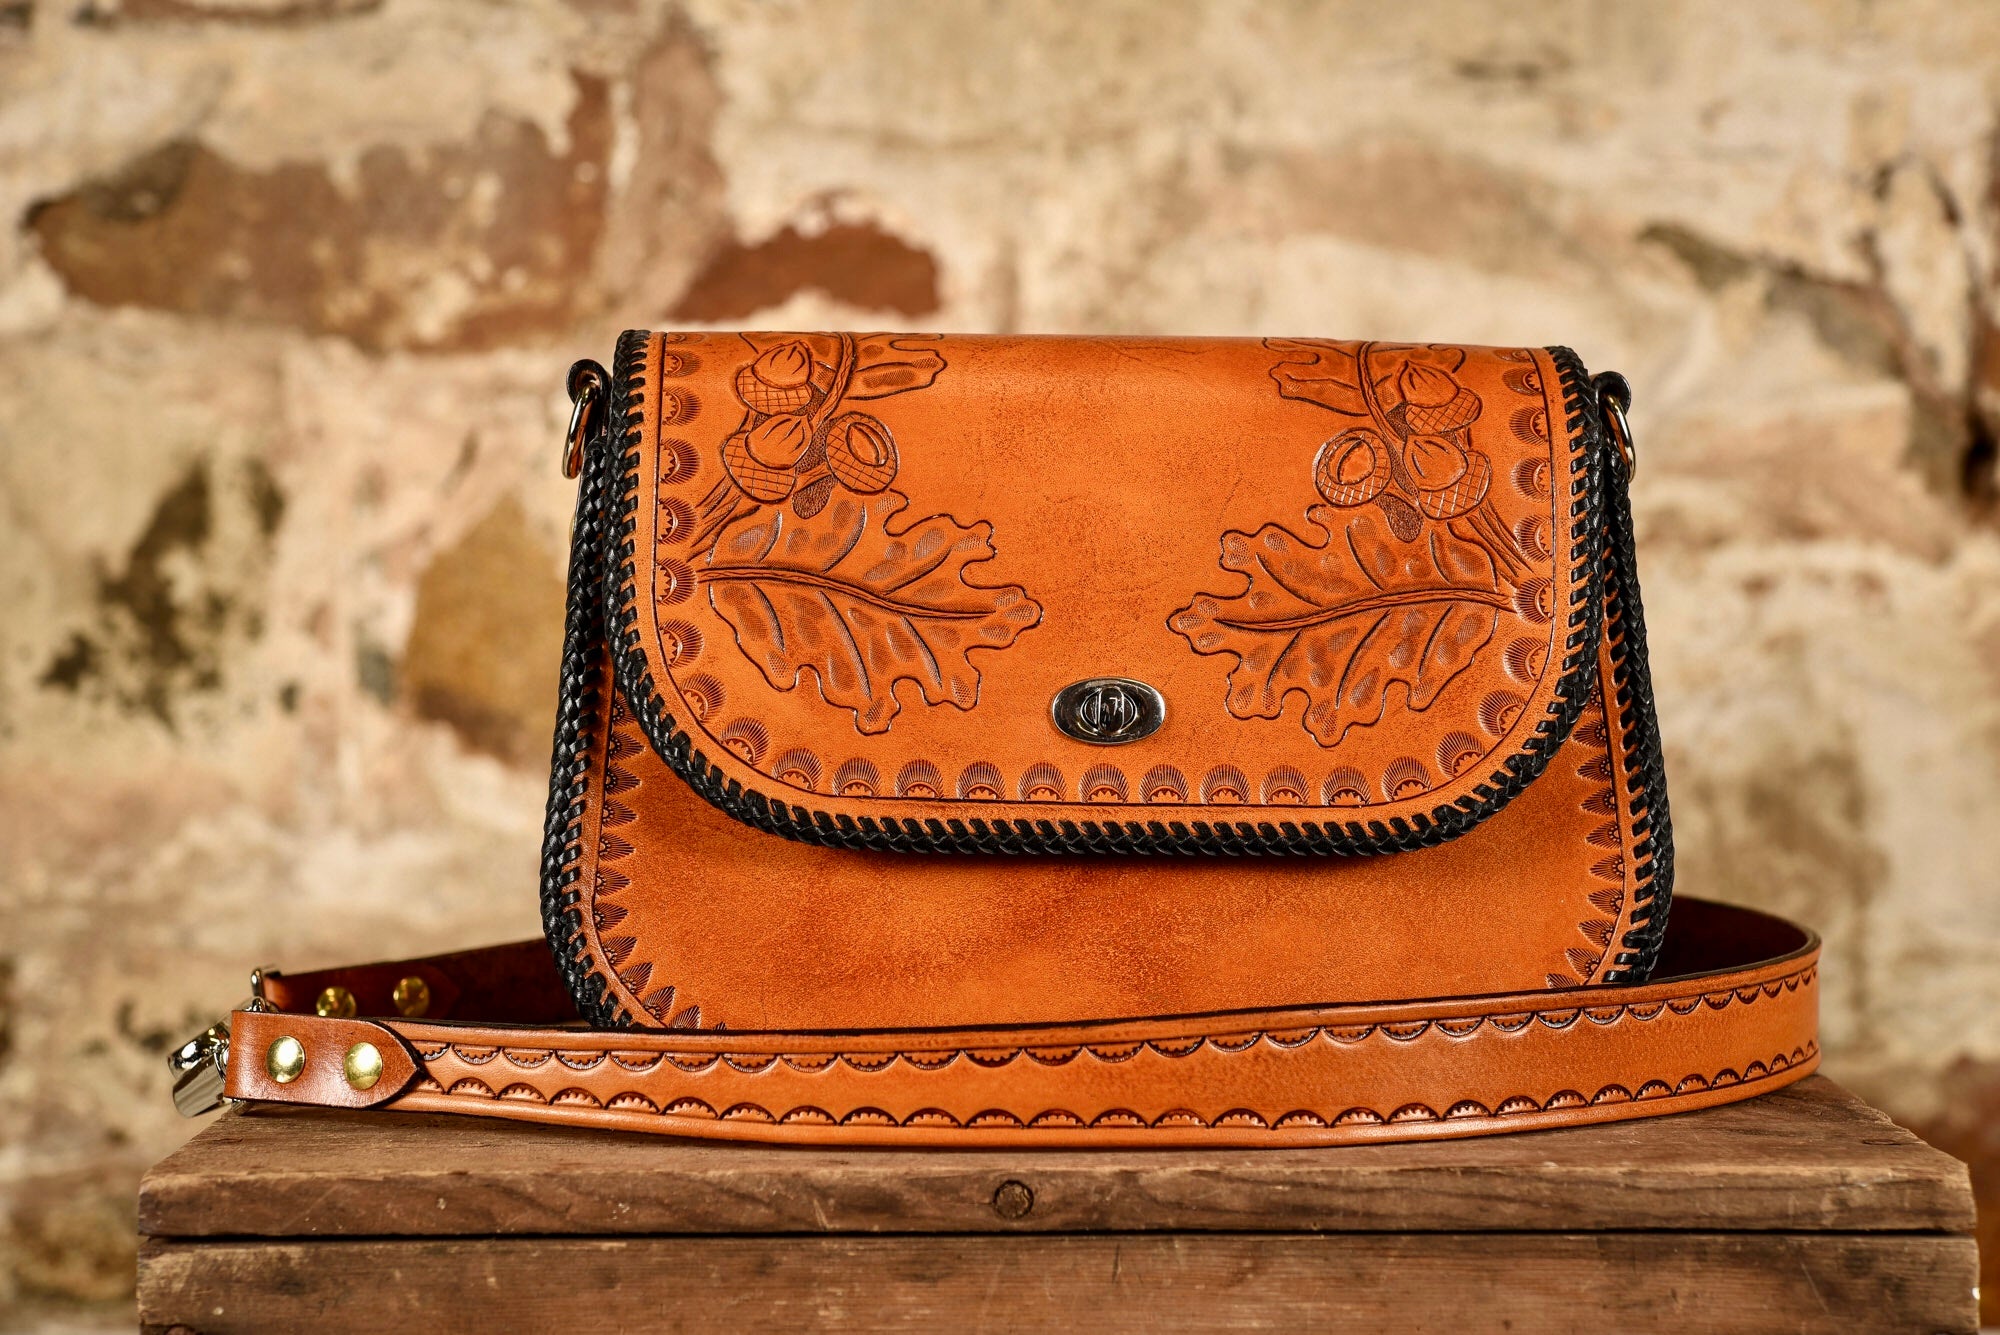 Women's Leather Wallets, Wristlets & Card Holders - Von Baer